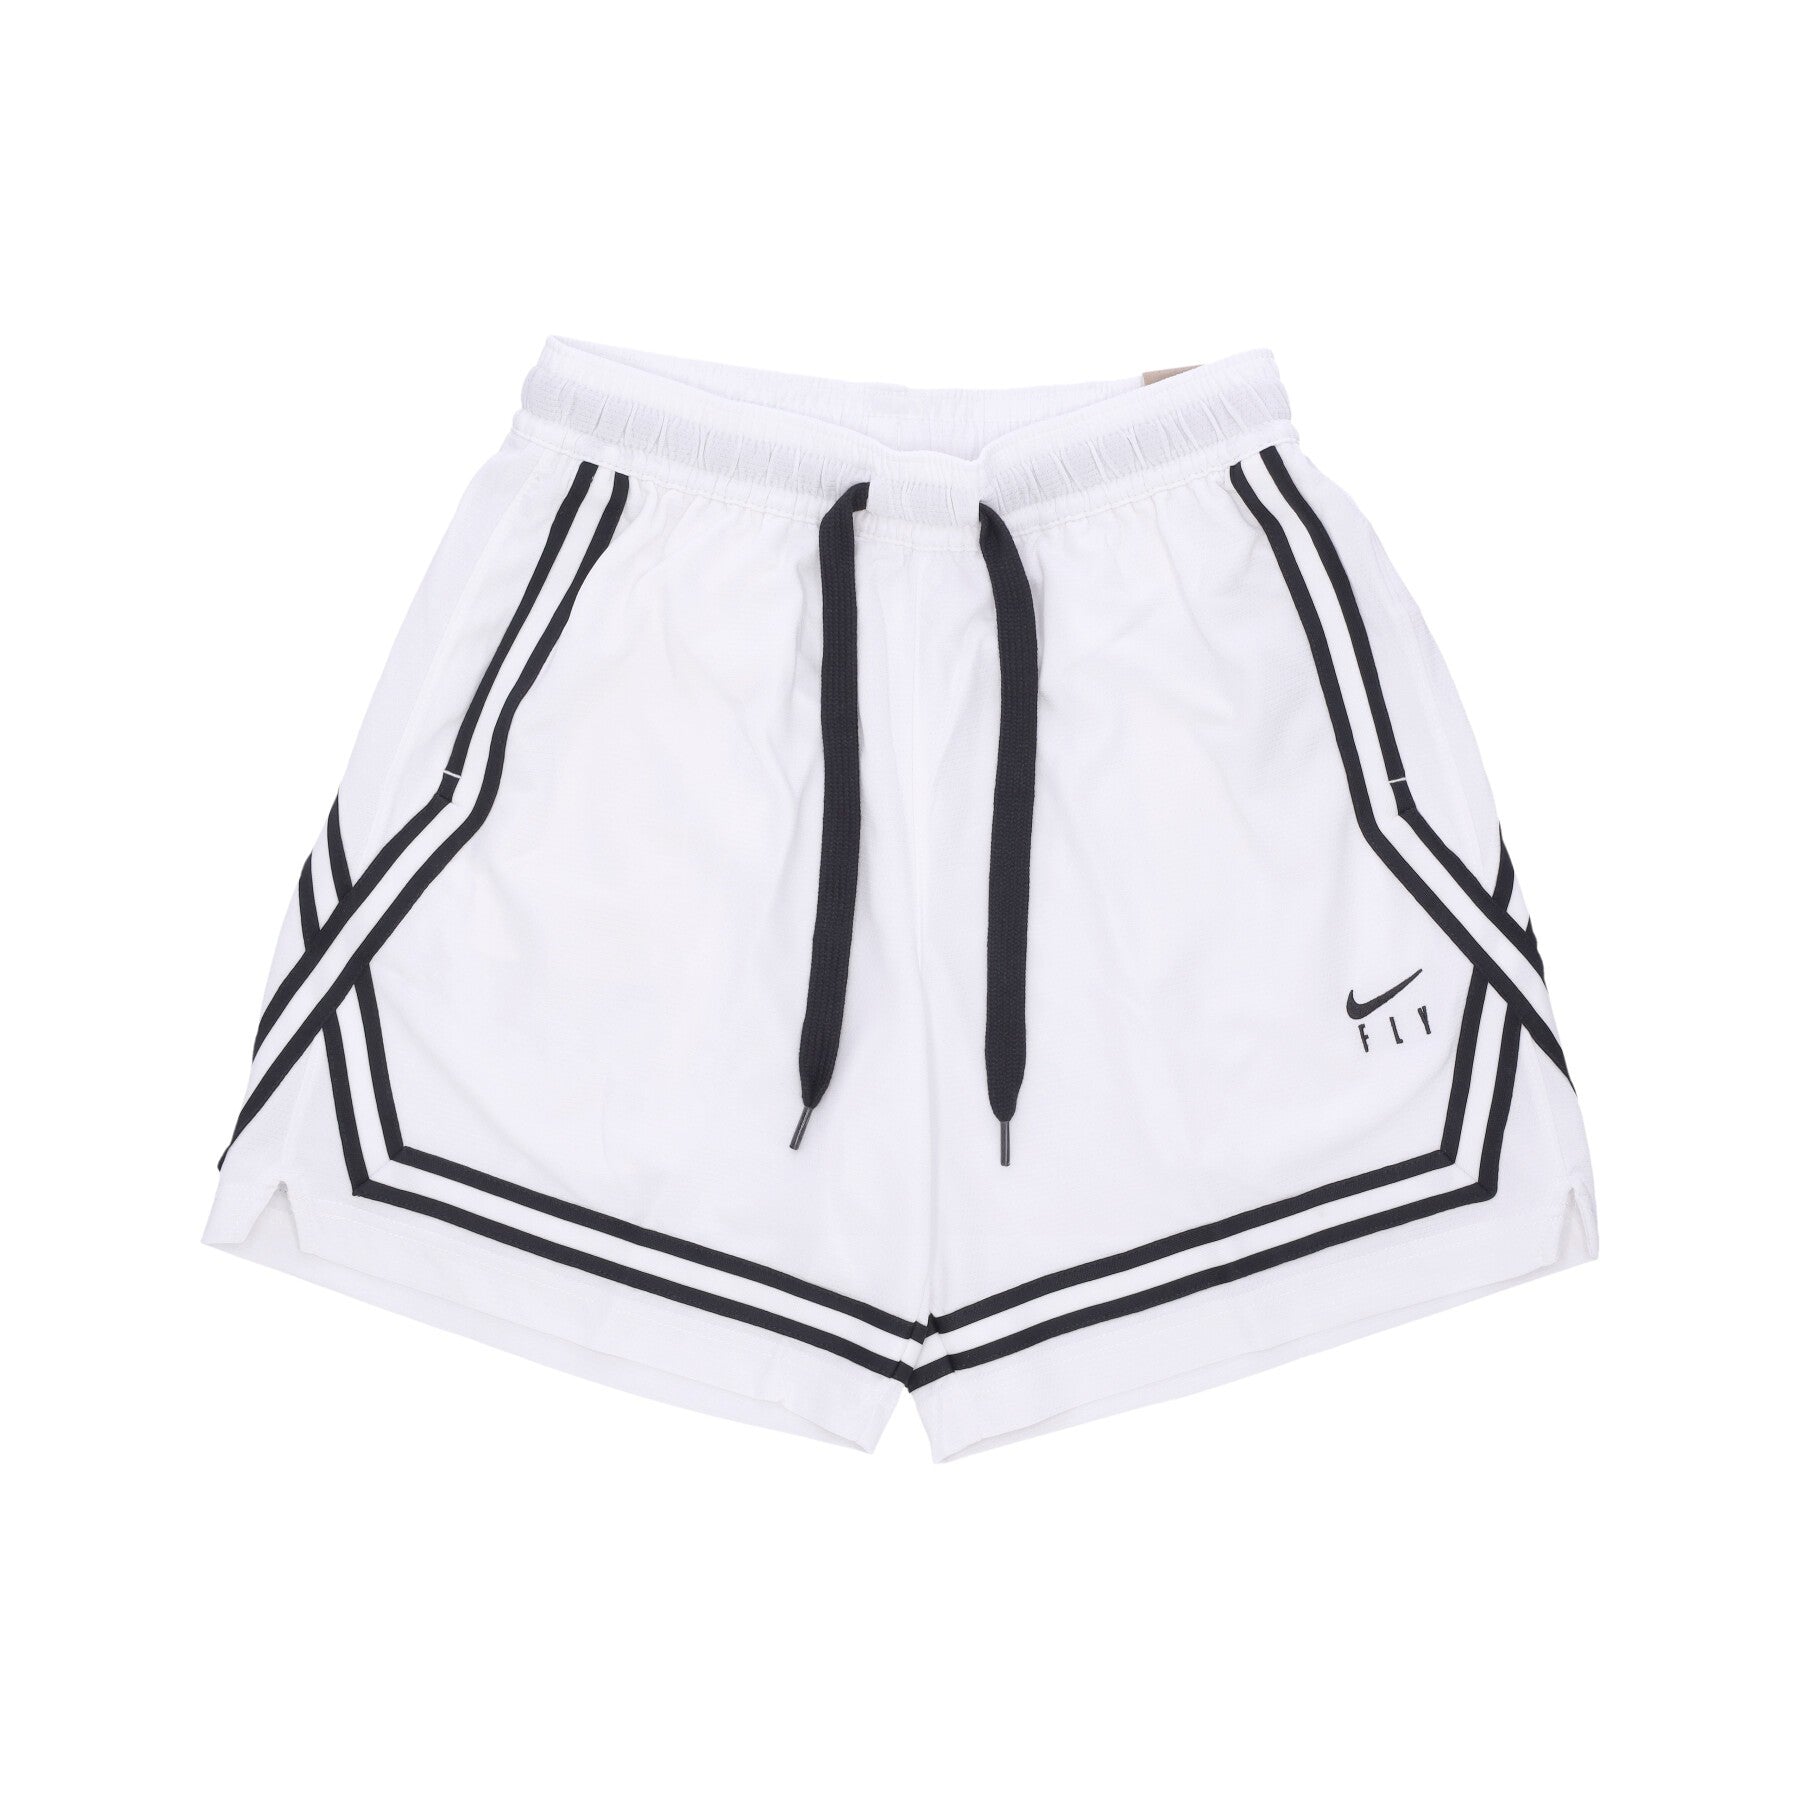 Women's Basketball Shorts Fly Crossover Basketball Short White/black